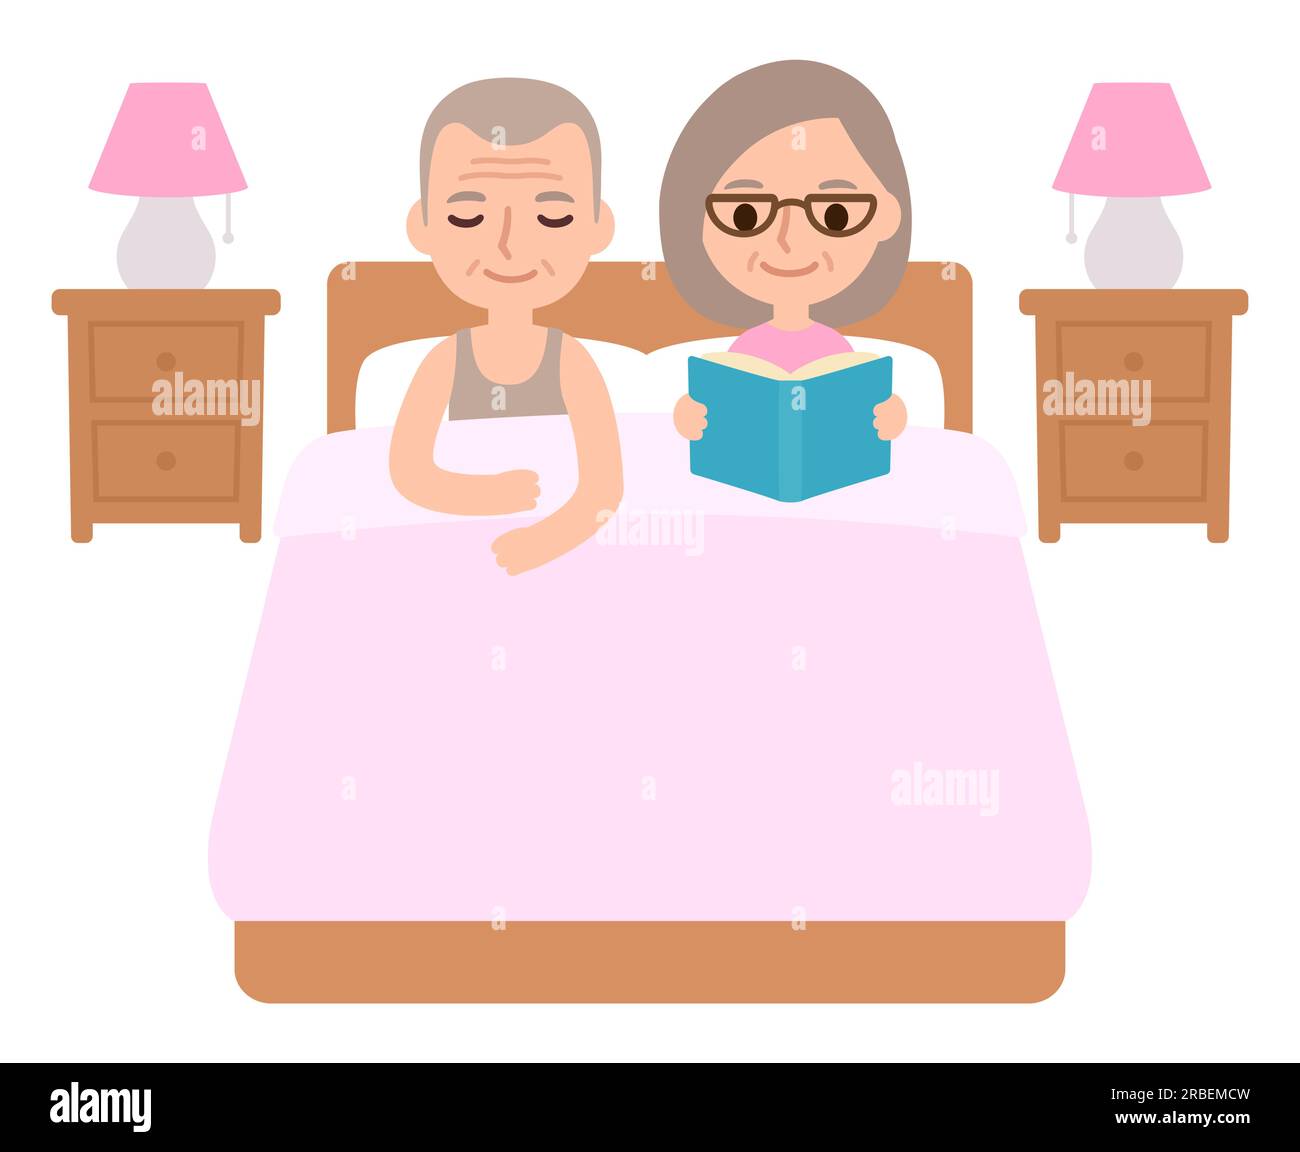 Ein süßes Comic-Seniorenpaar im Bett, ein schläfender Mann und eine Frau, die ein Buch liest. Vektordarstellung der Schlafenszeit-Relaxationsroutine. Stock Vektor